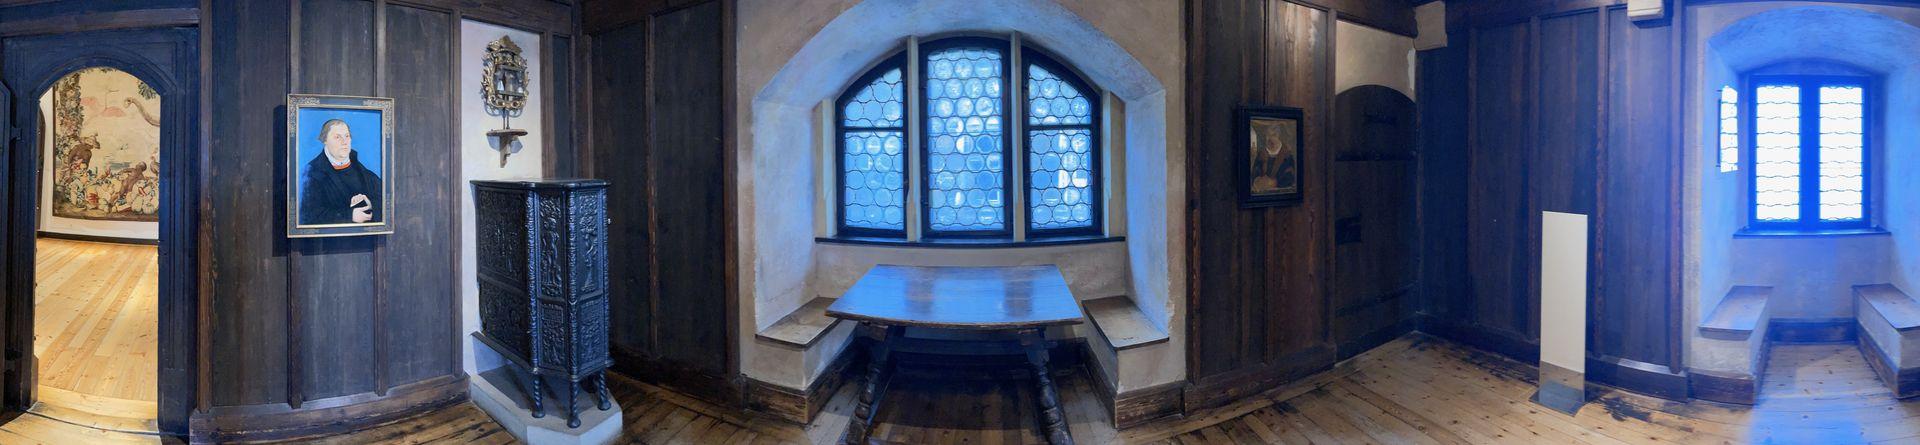 In dieser Kammer lebte und wirkte Martin Luther im Jahr 1530 rund ein halbes Jahr lang.